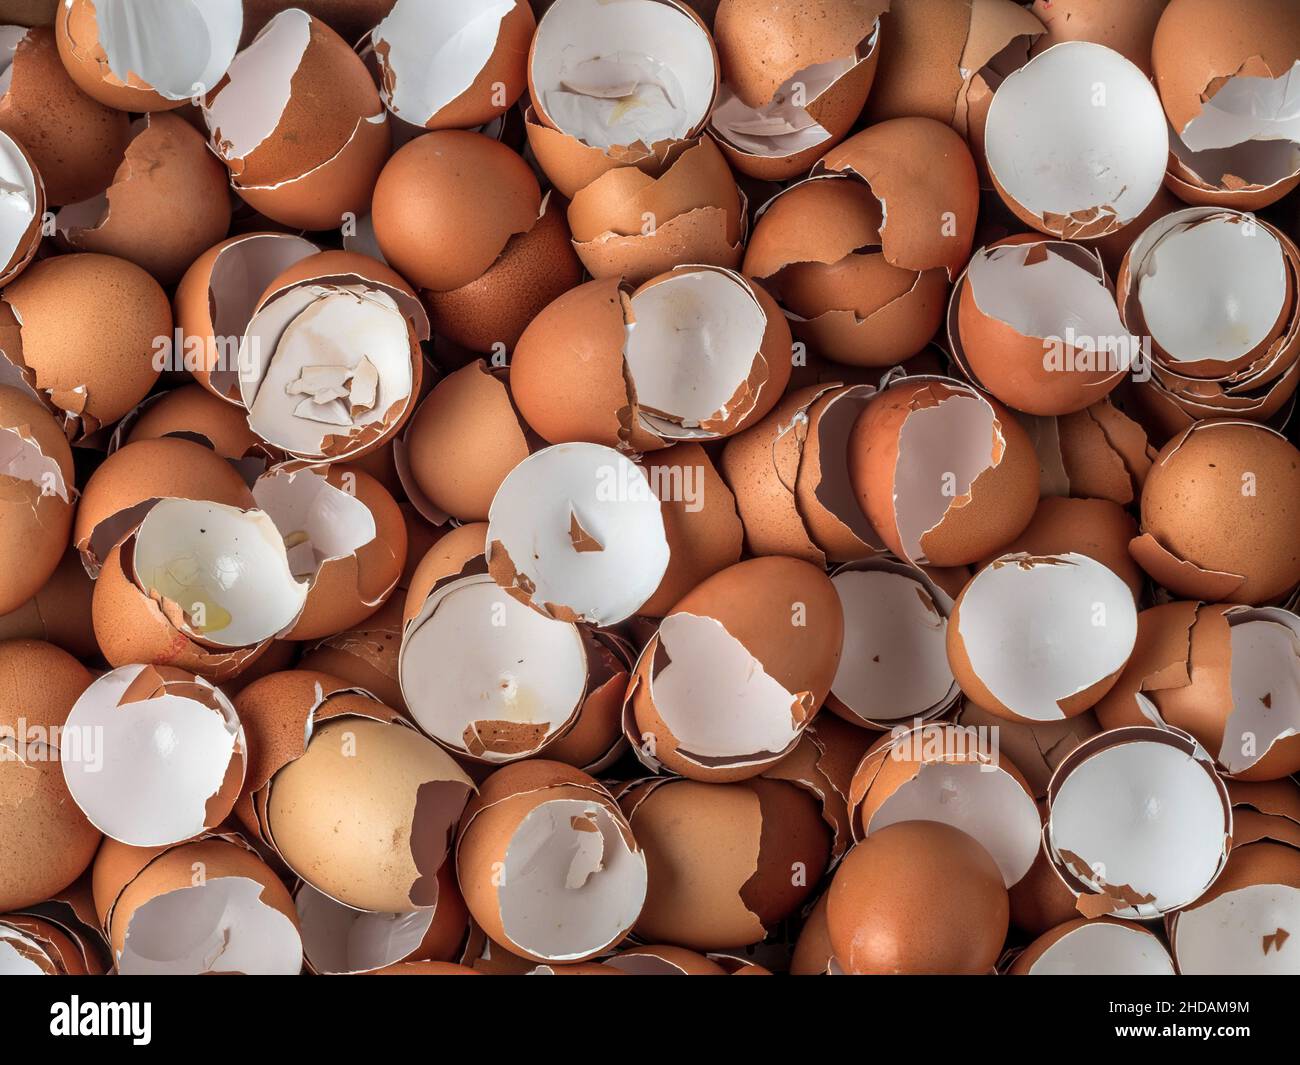 Leere Schalen von Eiern aufgestapelt. Stock Photo